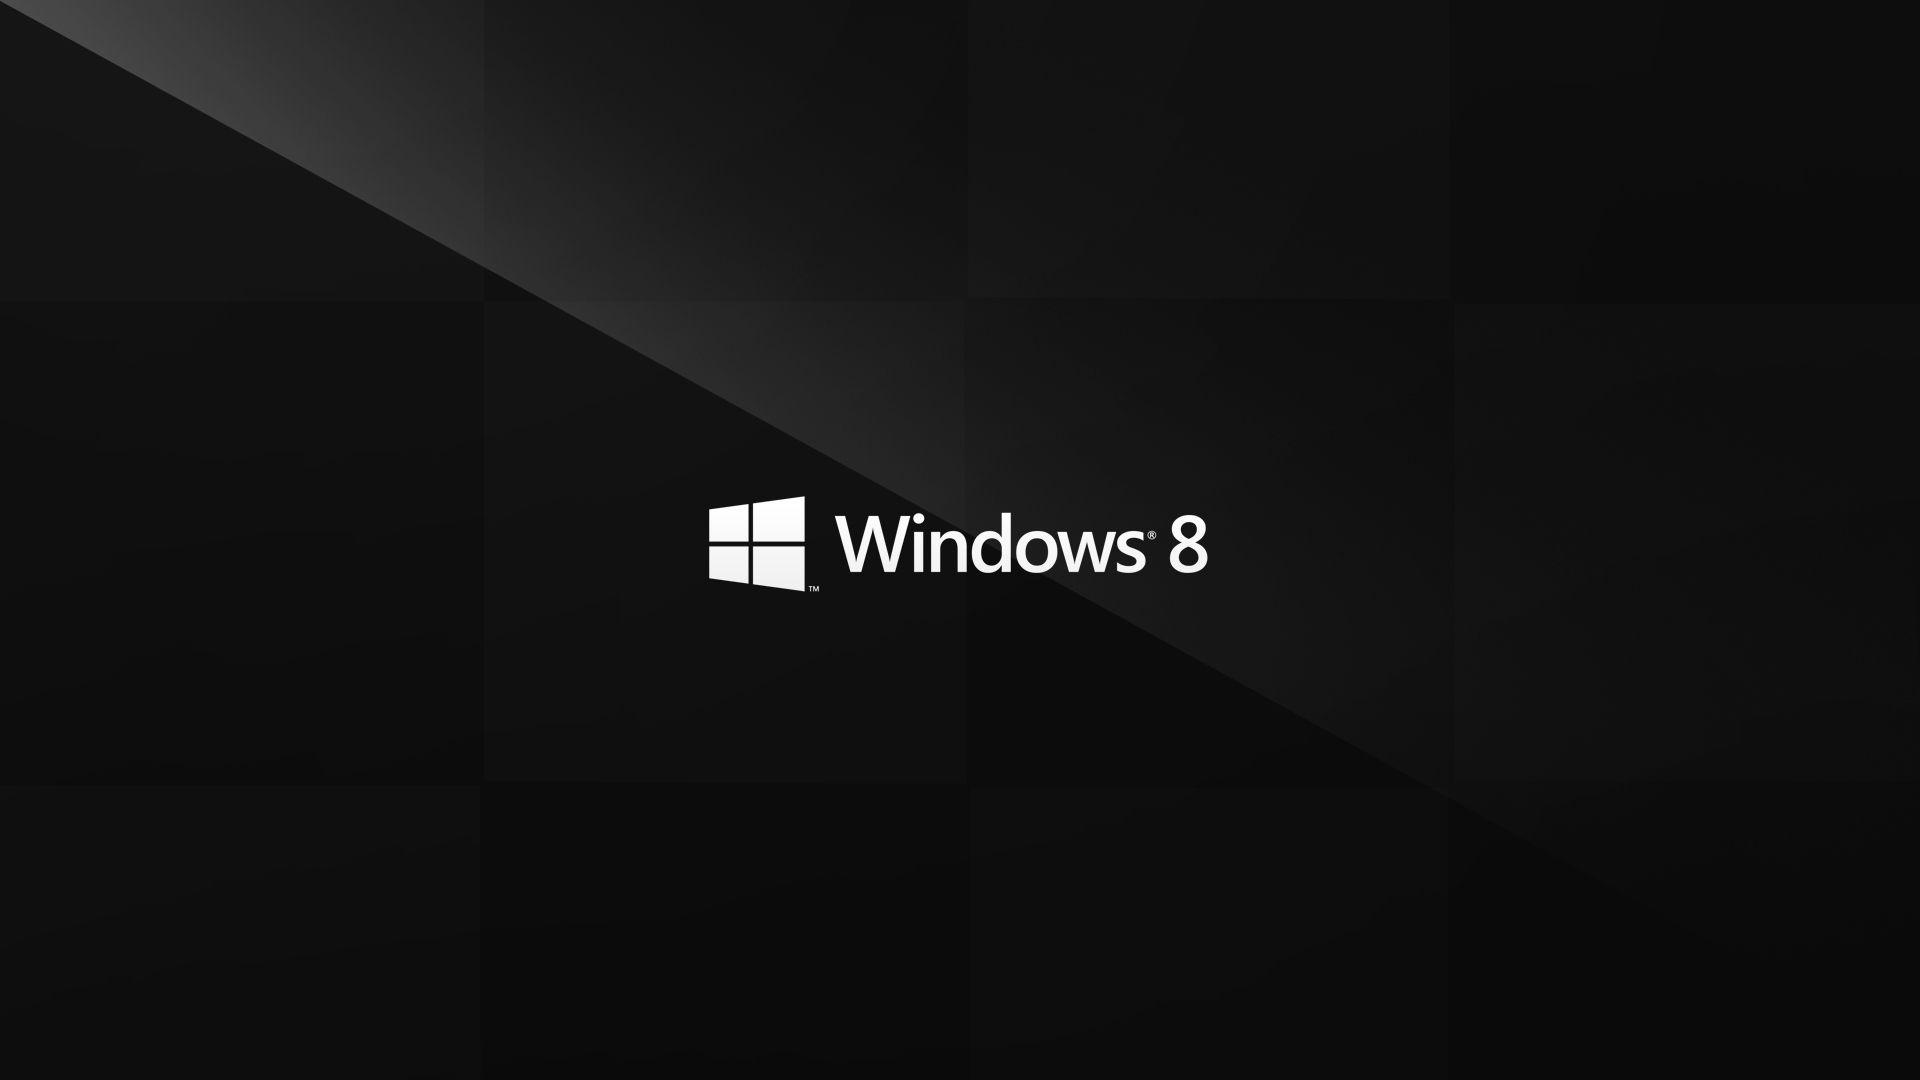 Khám phá thêm về thiết kế thiết bị thông minh, tính năng bảo mật và đa nhiệm thú vị. Xem ảnh về Windows 8.1 để tìm hiểu thêm về sản phẩm đầy tiềm năng này.